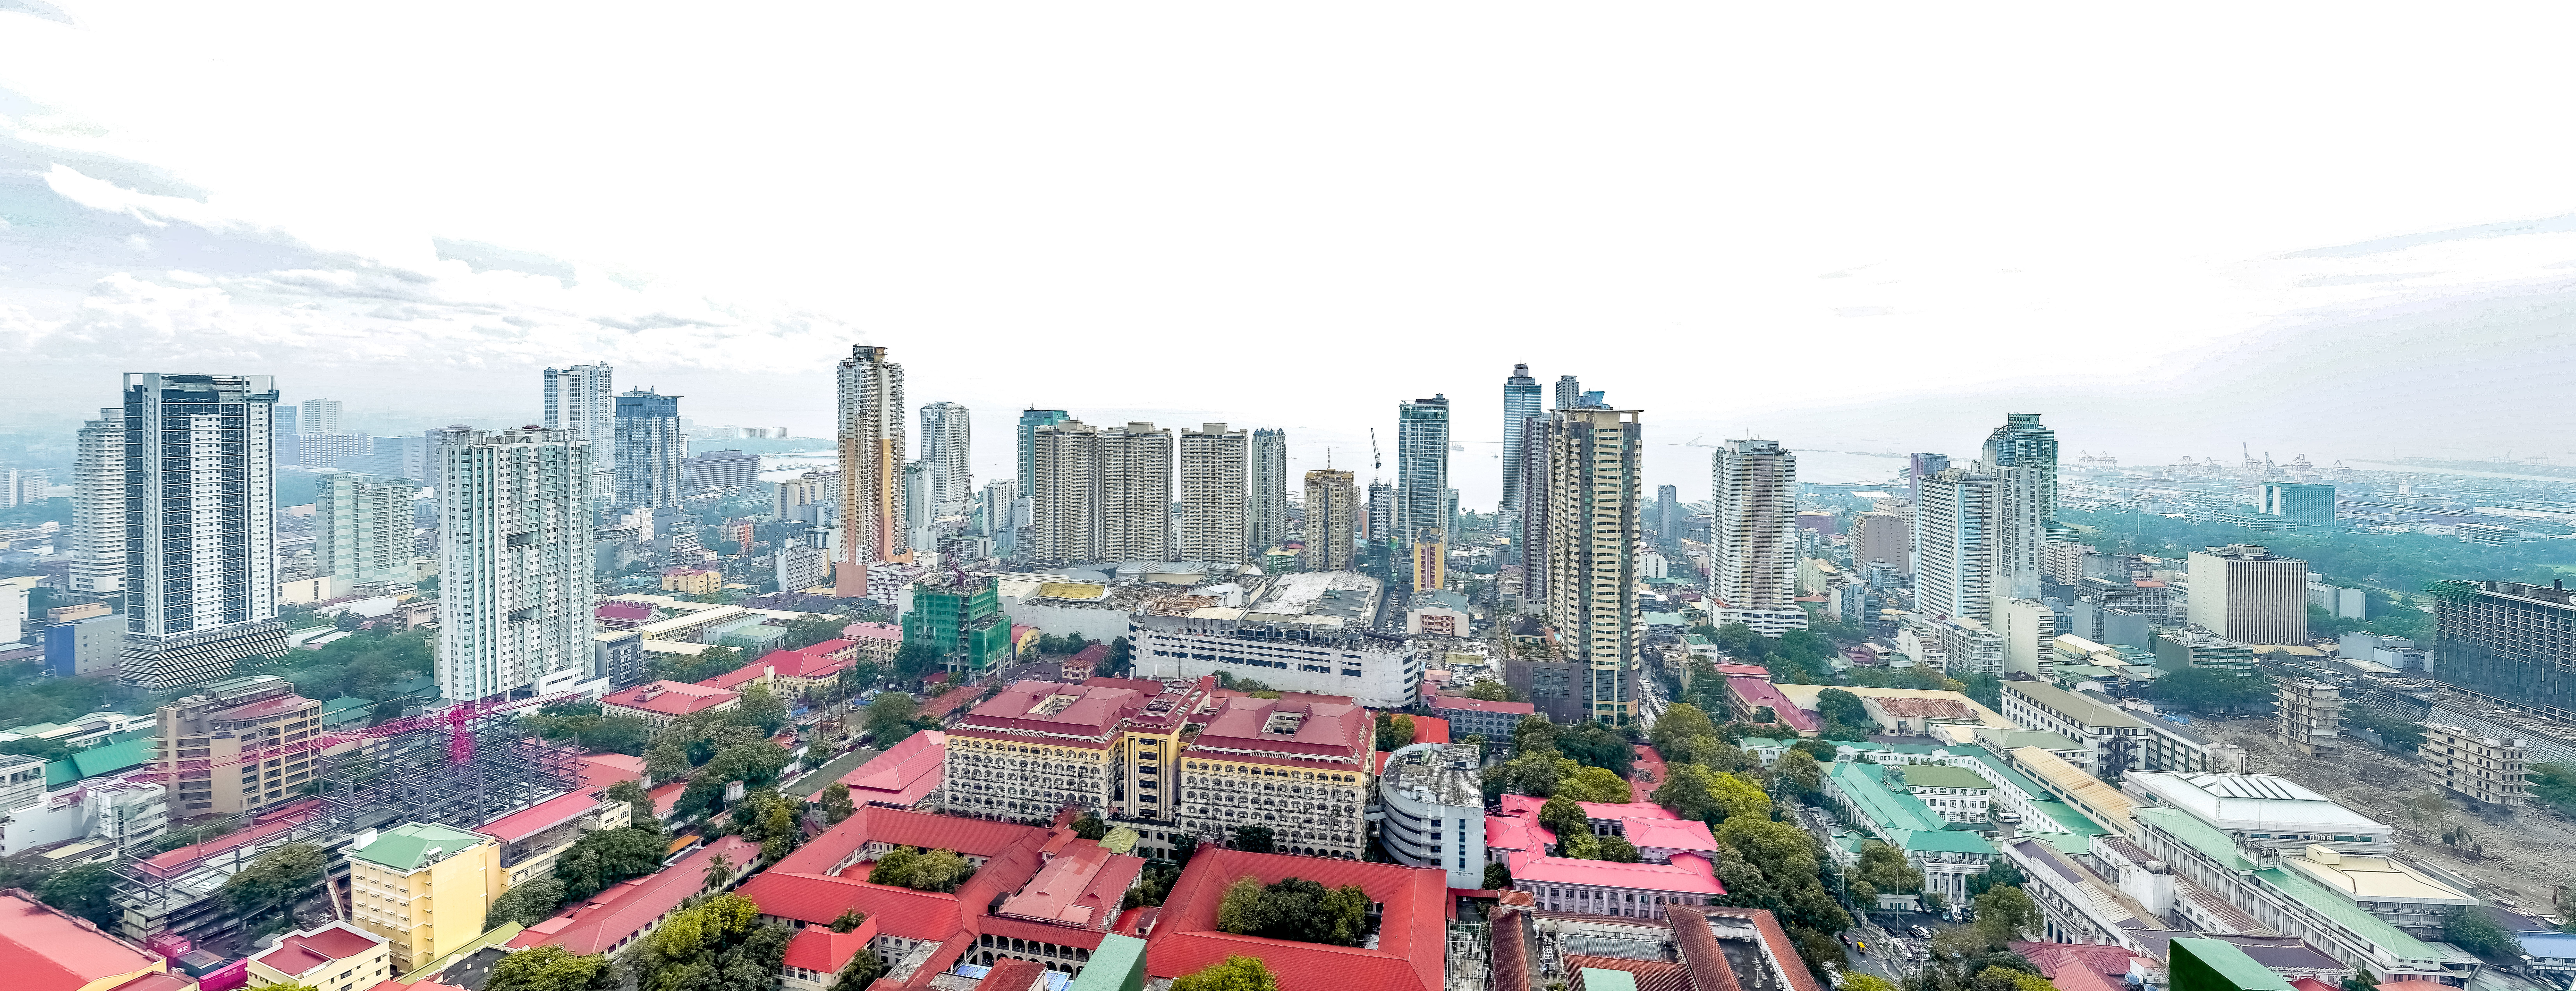 Vista GL Taft condo for sale in Manila